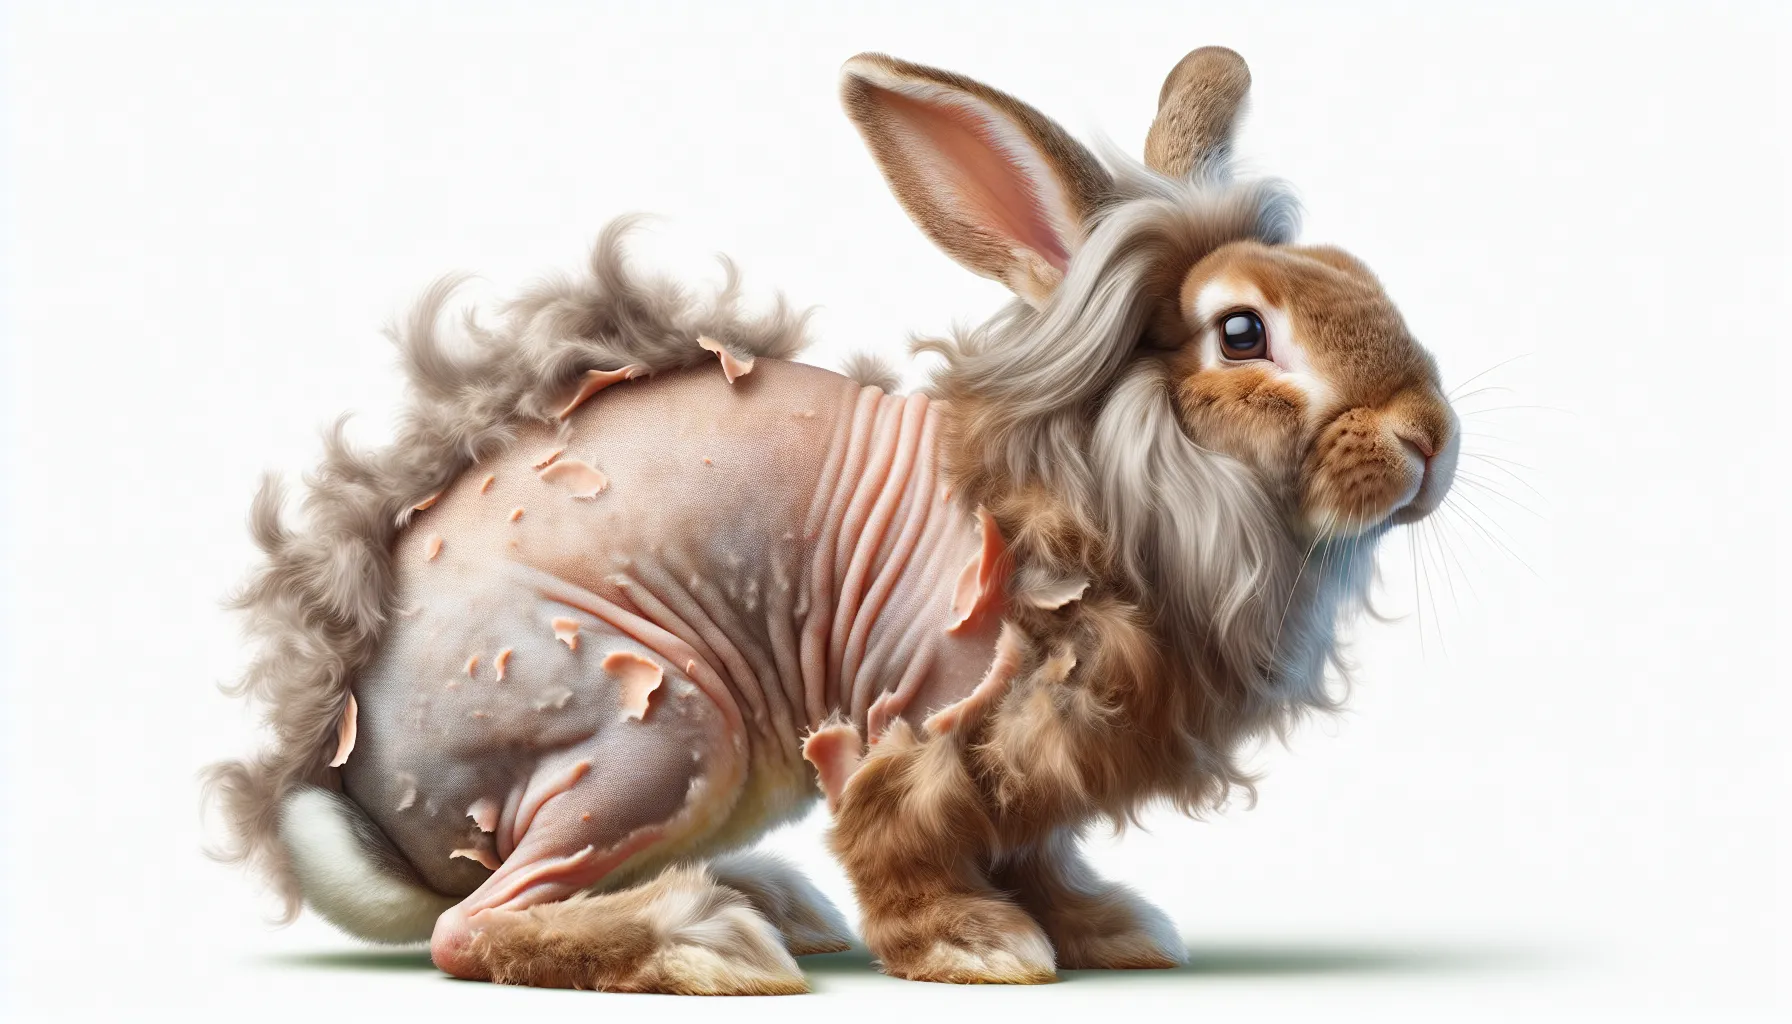 Imagen de un conejo mudando su pelaje para renovar su apariencia y regular su temperatura corporal.